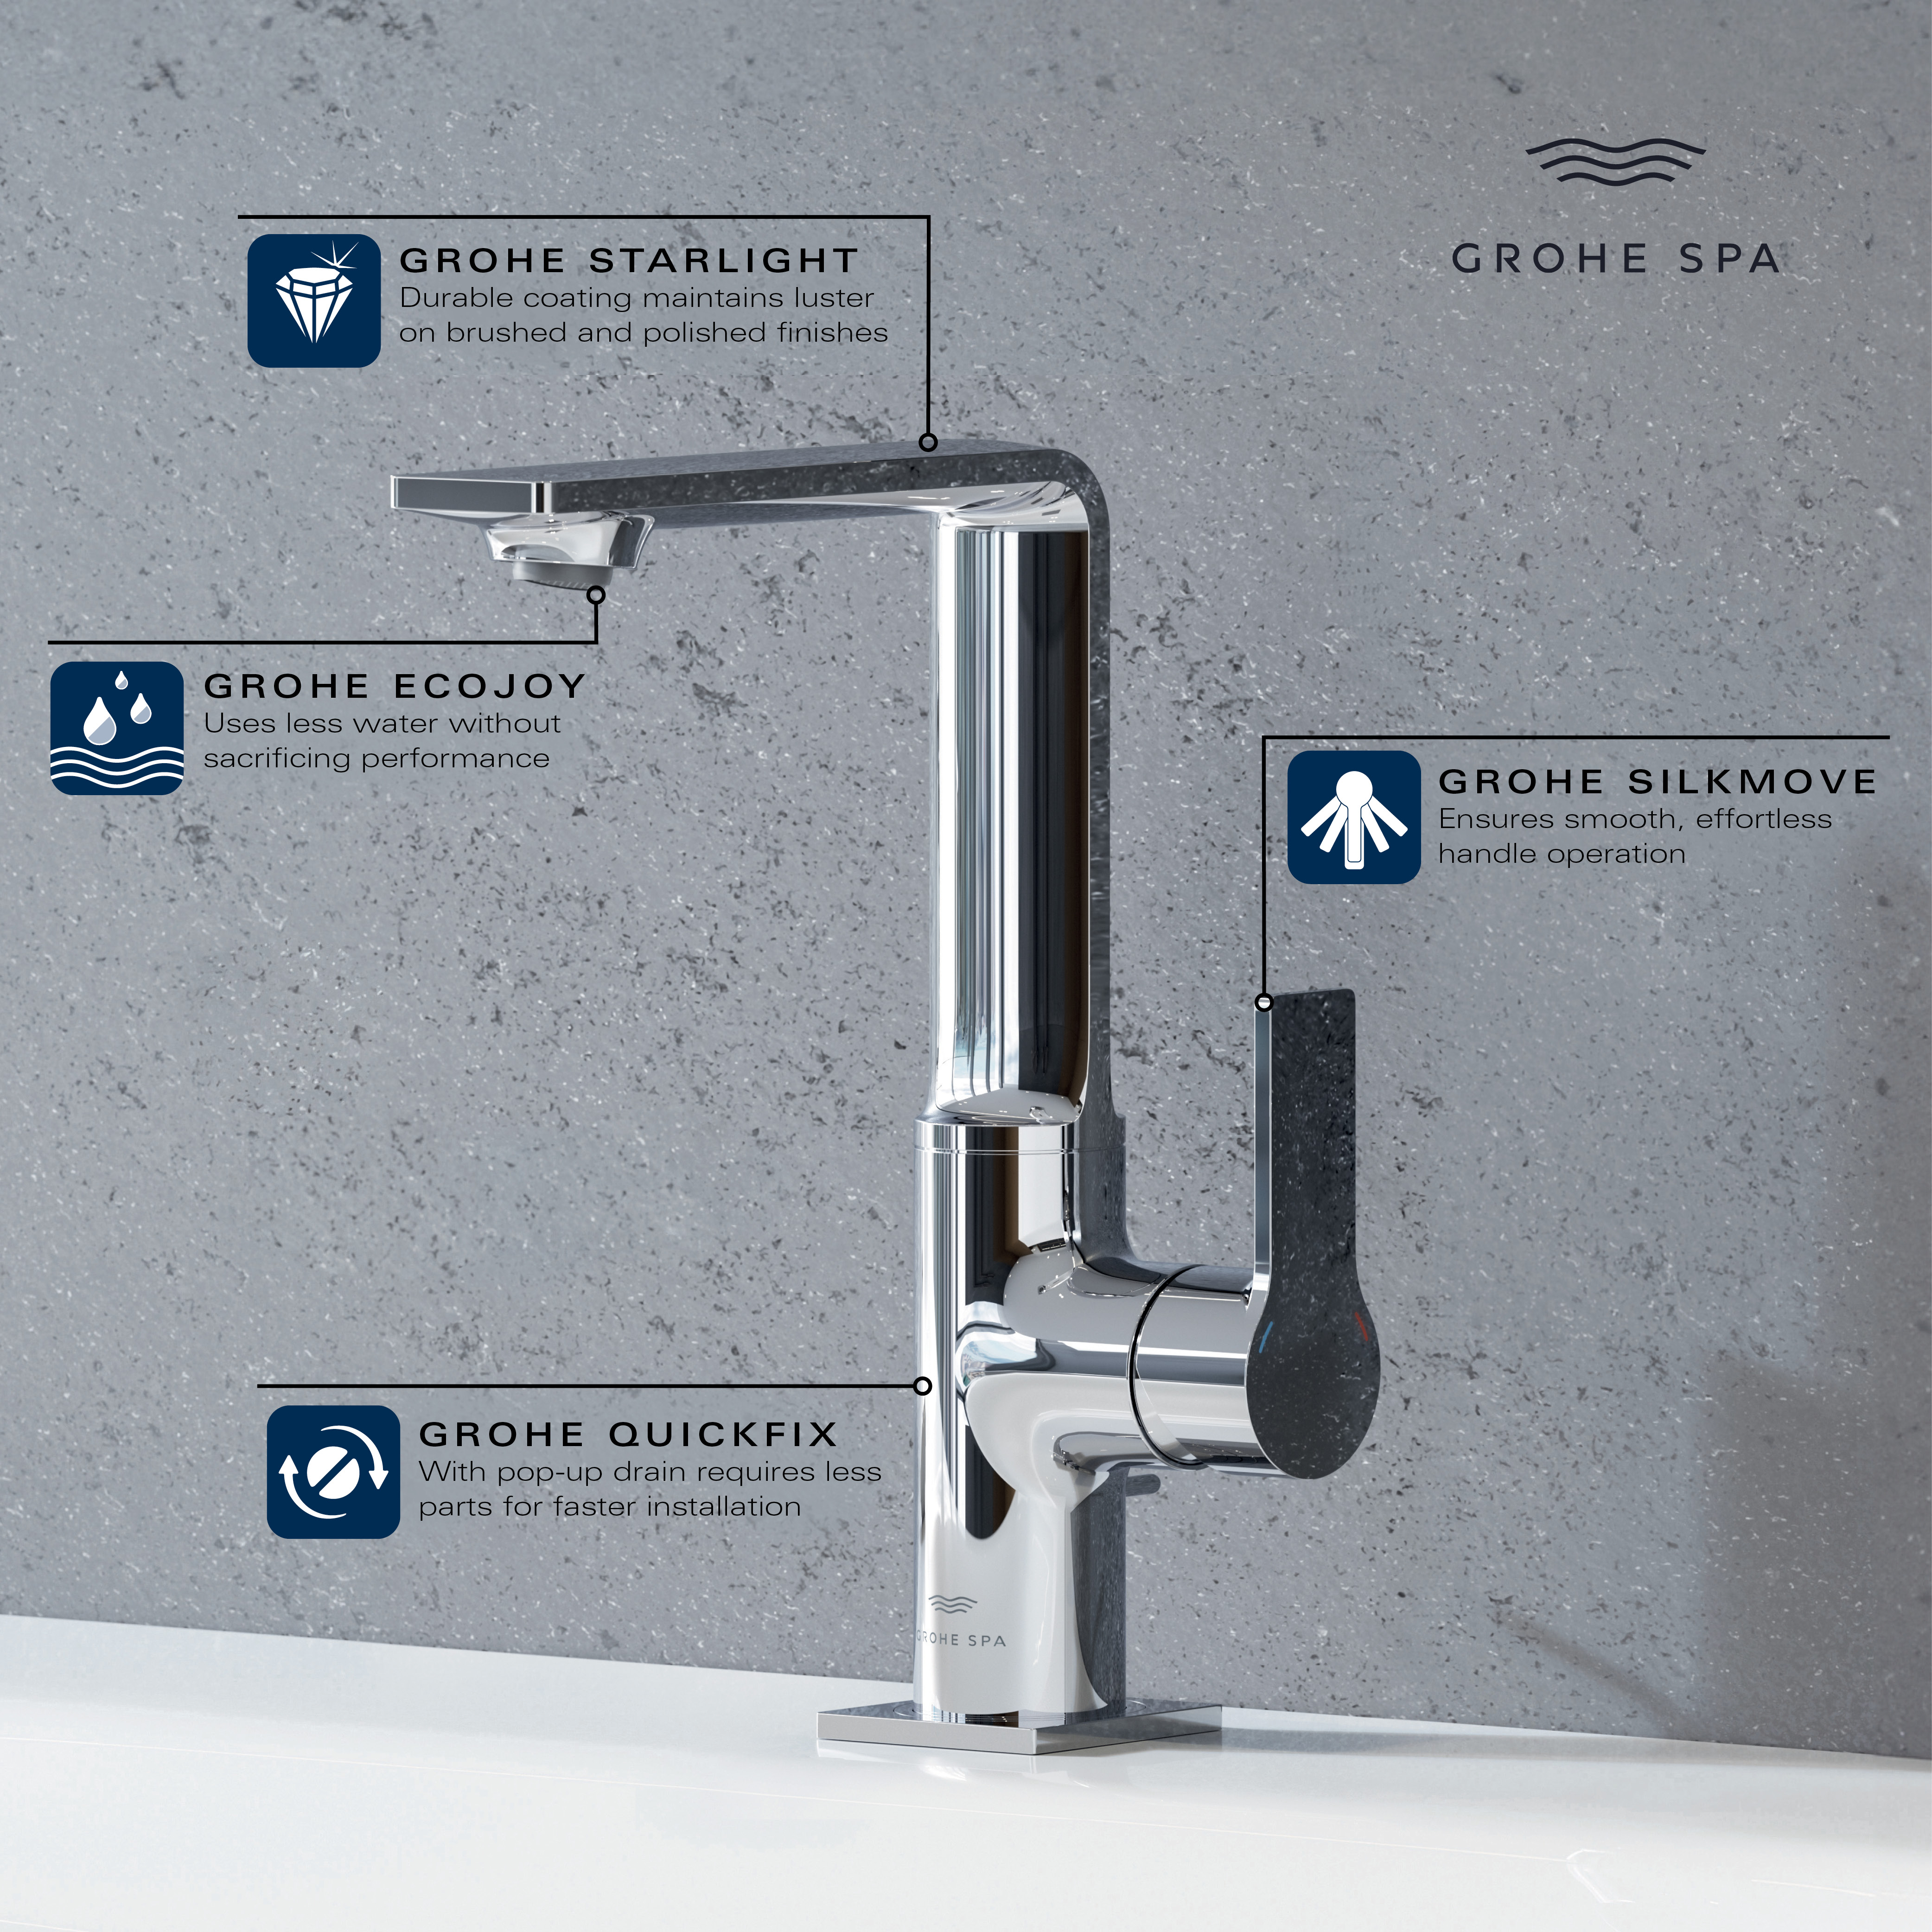 Grand robinet monotrou pour salle de bain, à poignée simple, 4,8 L/min (1,2 GPM)